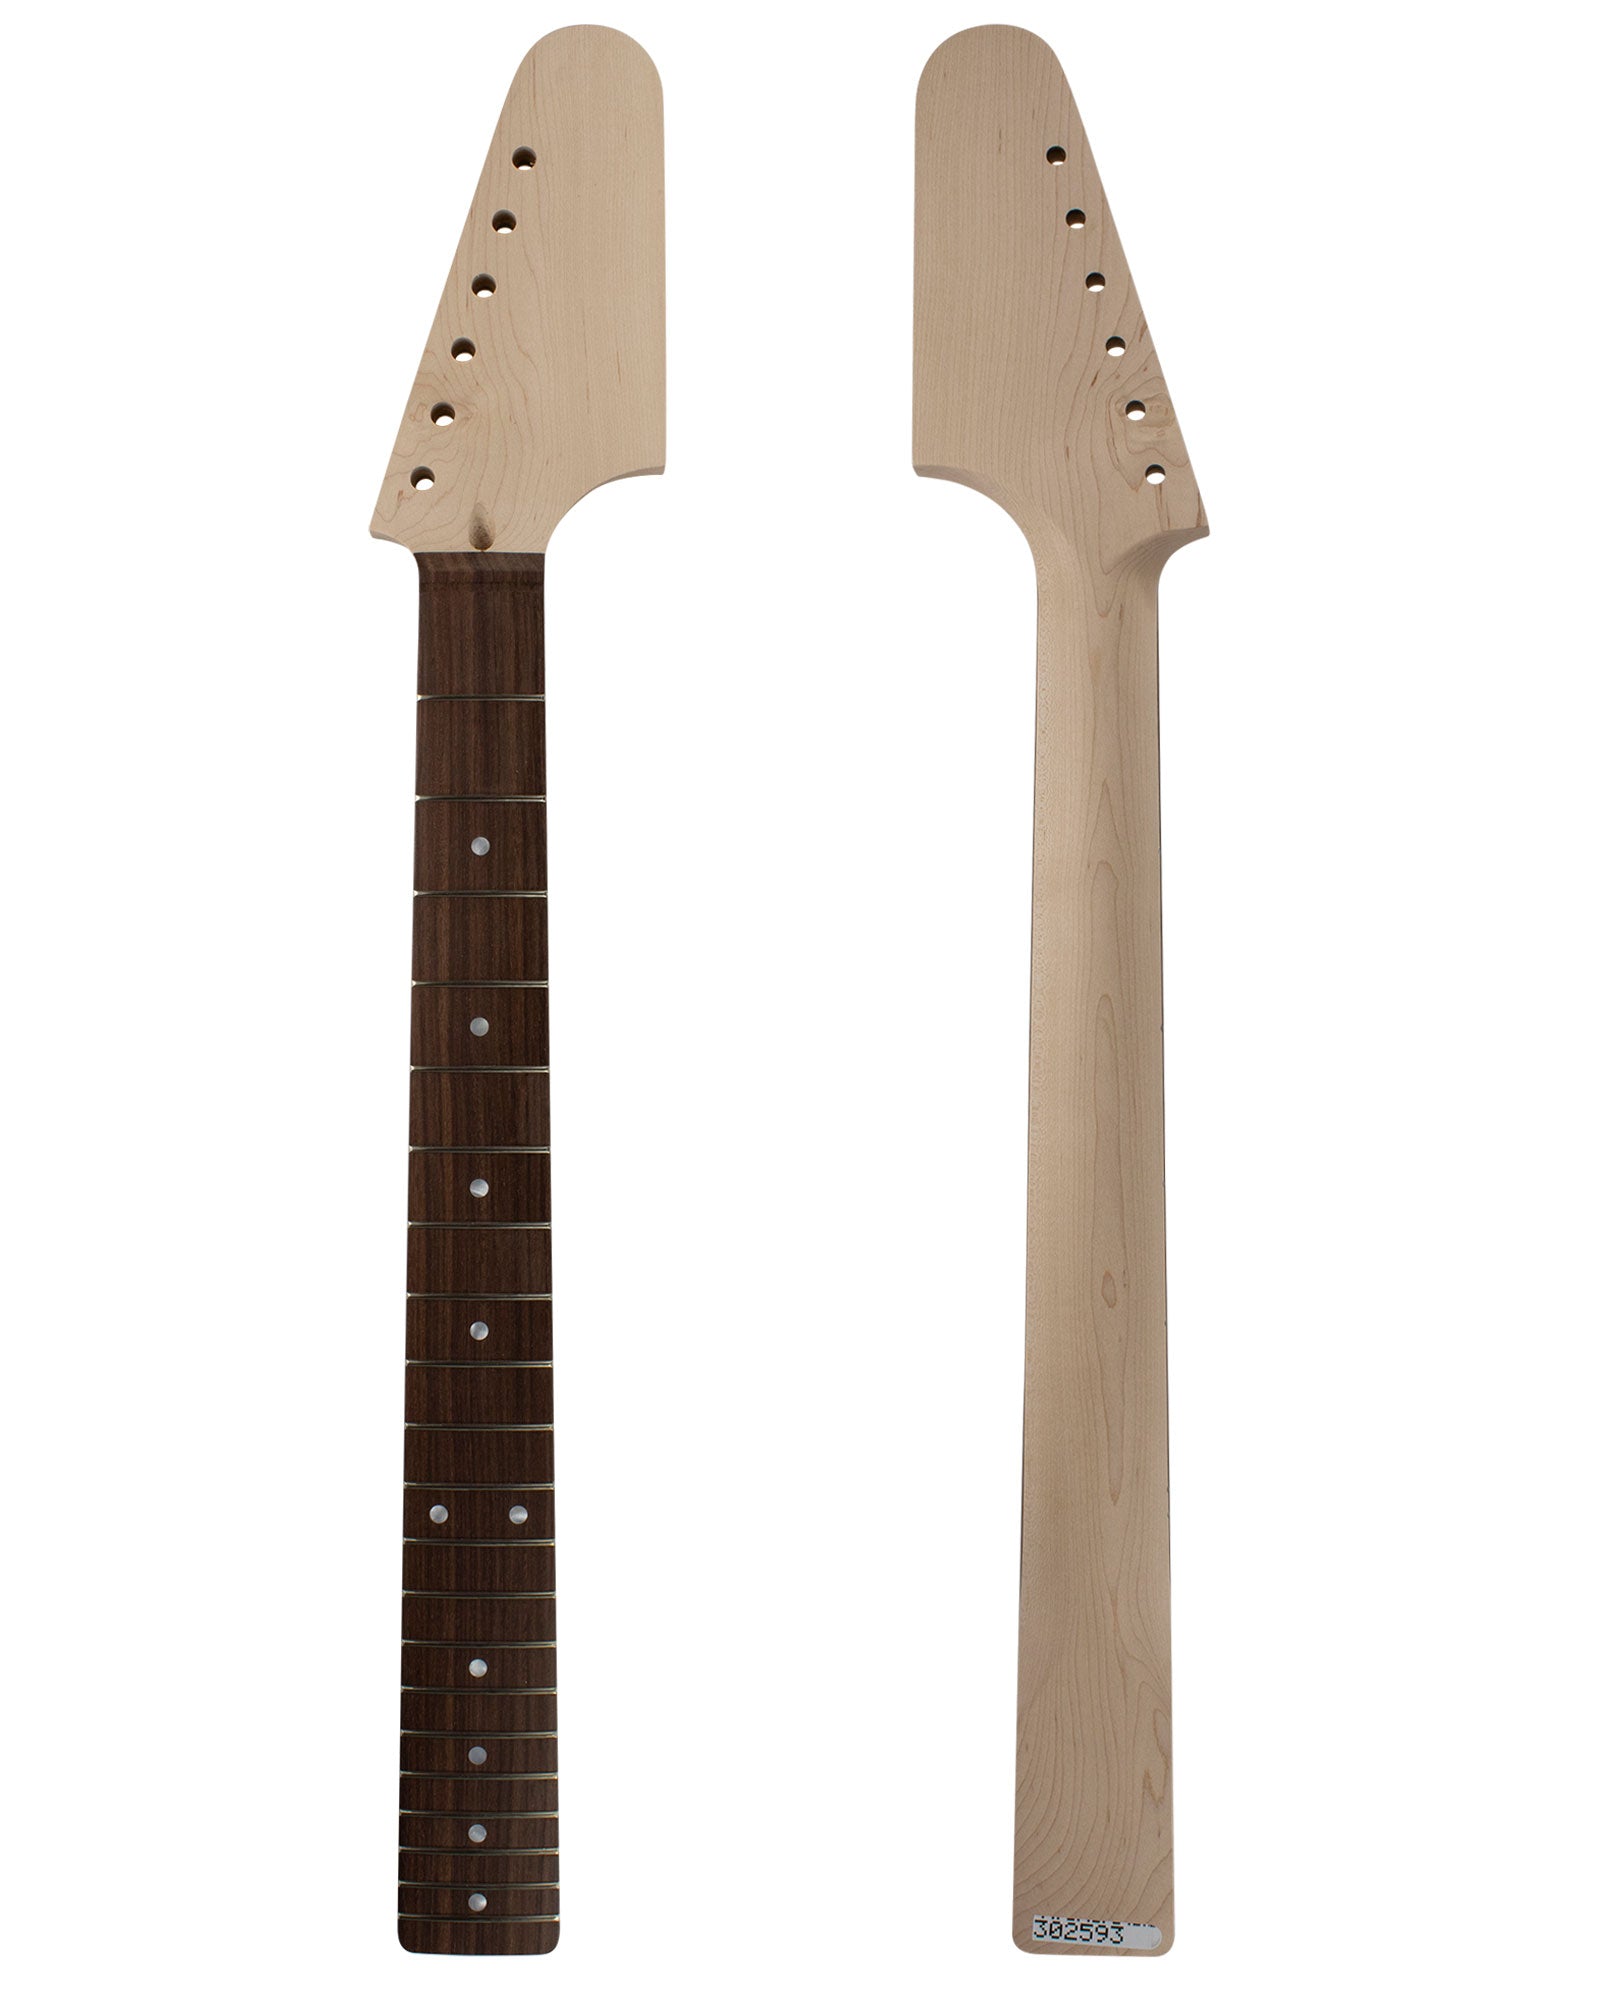 TC Guitar Neck 302593-Guitar Neck - In Stock-Guitarbuild